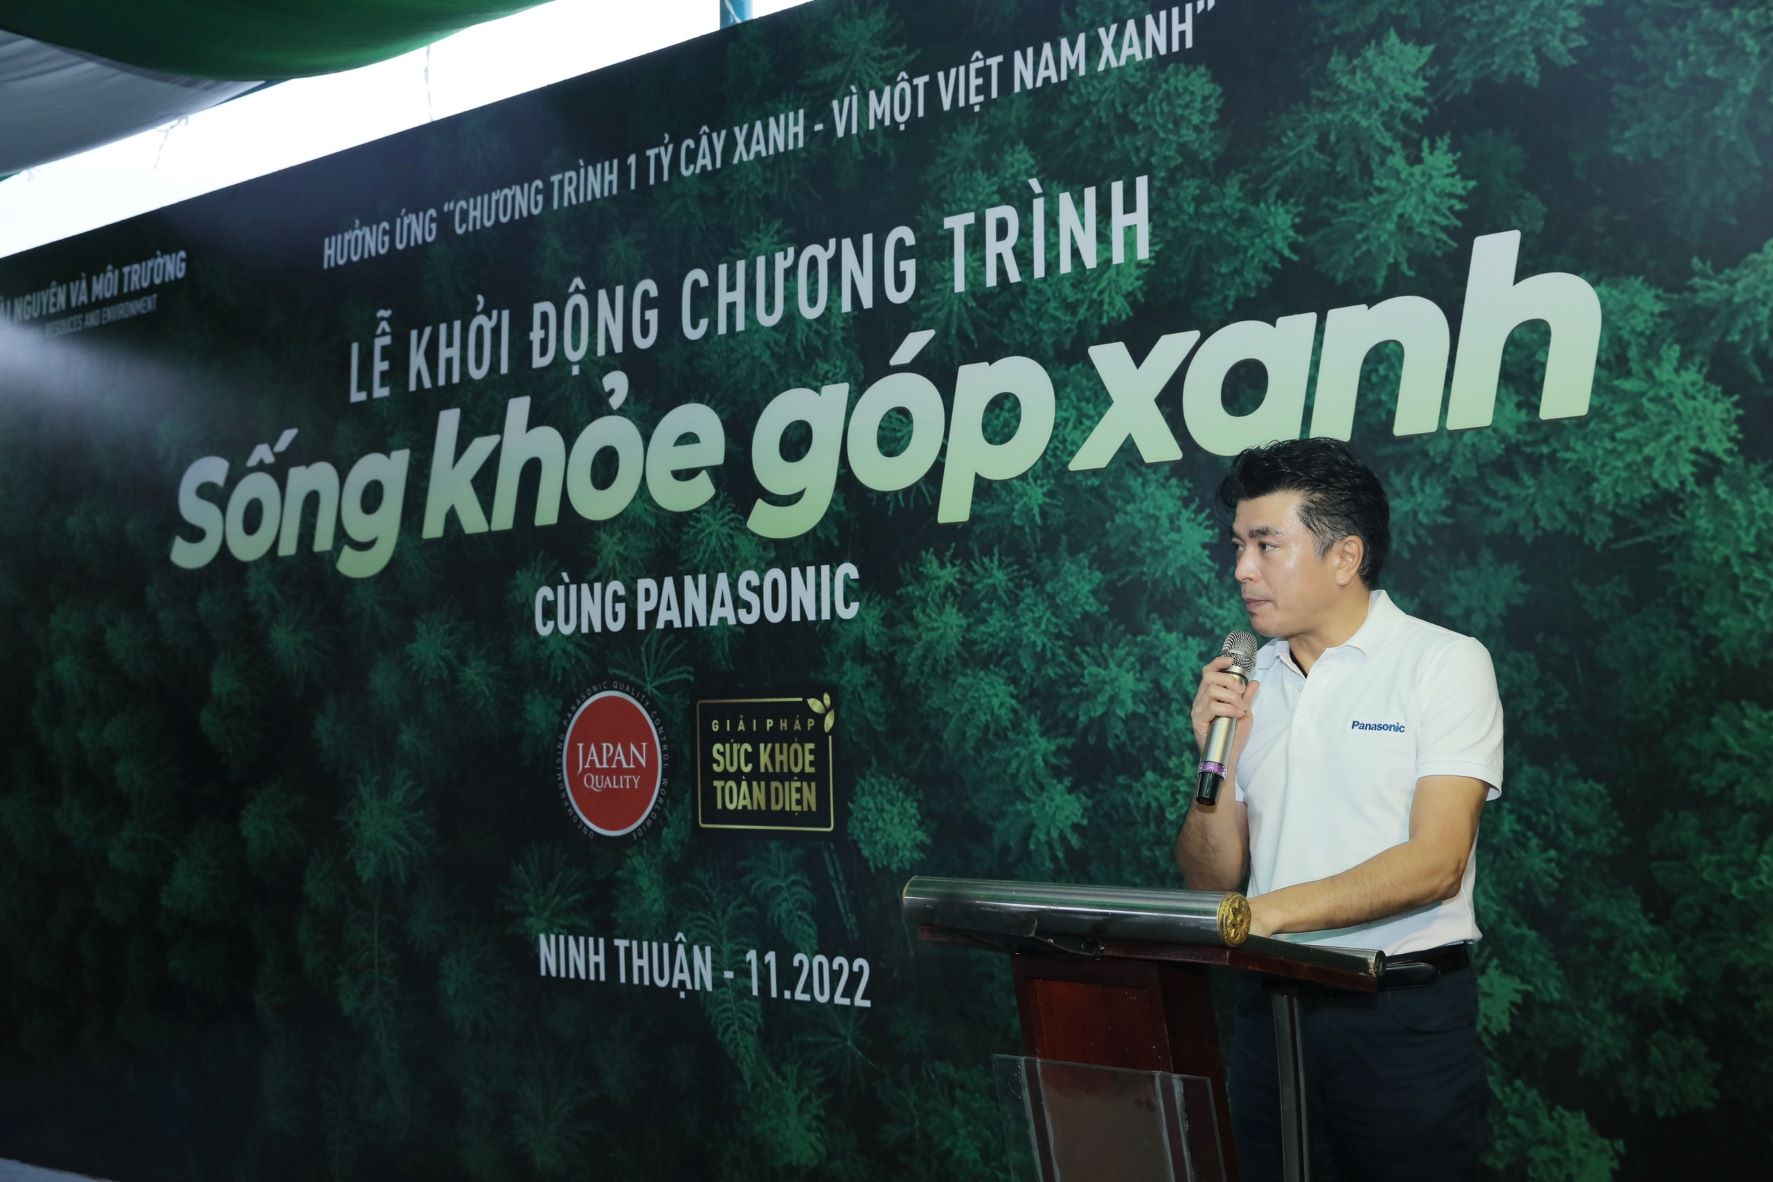 Panasonic khởi động chương trình trồng rừng “Sống khỏe góp xanh” chung sức trồng 1 tỷ cây xanh – vì một Việt Nam xanh - 2